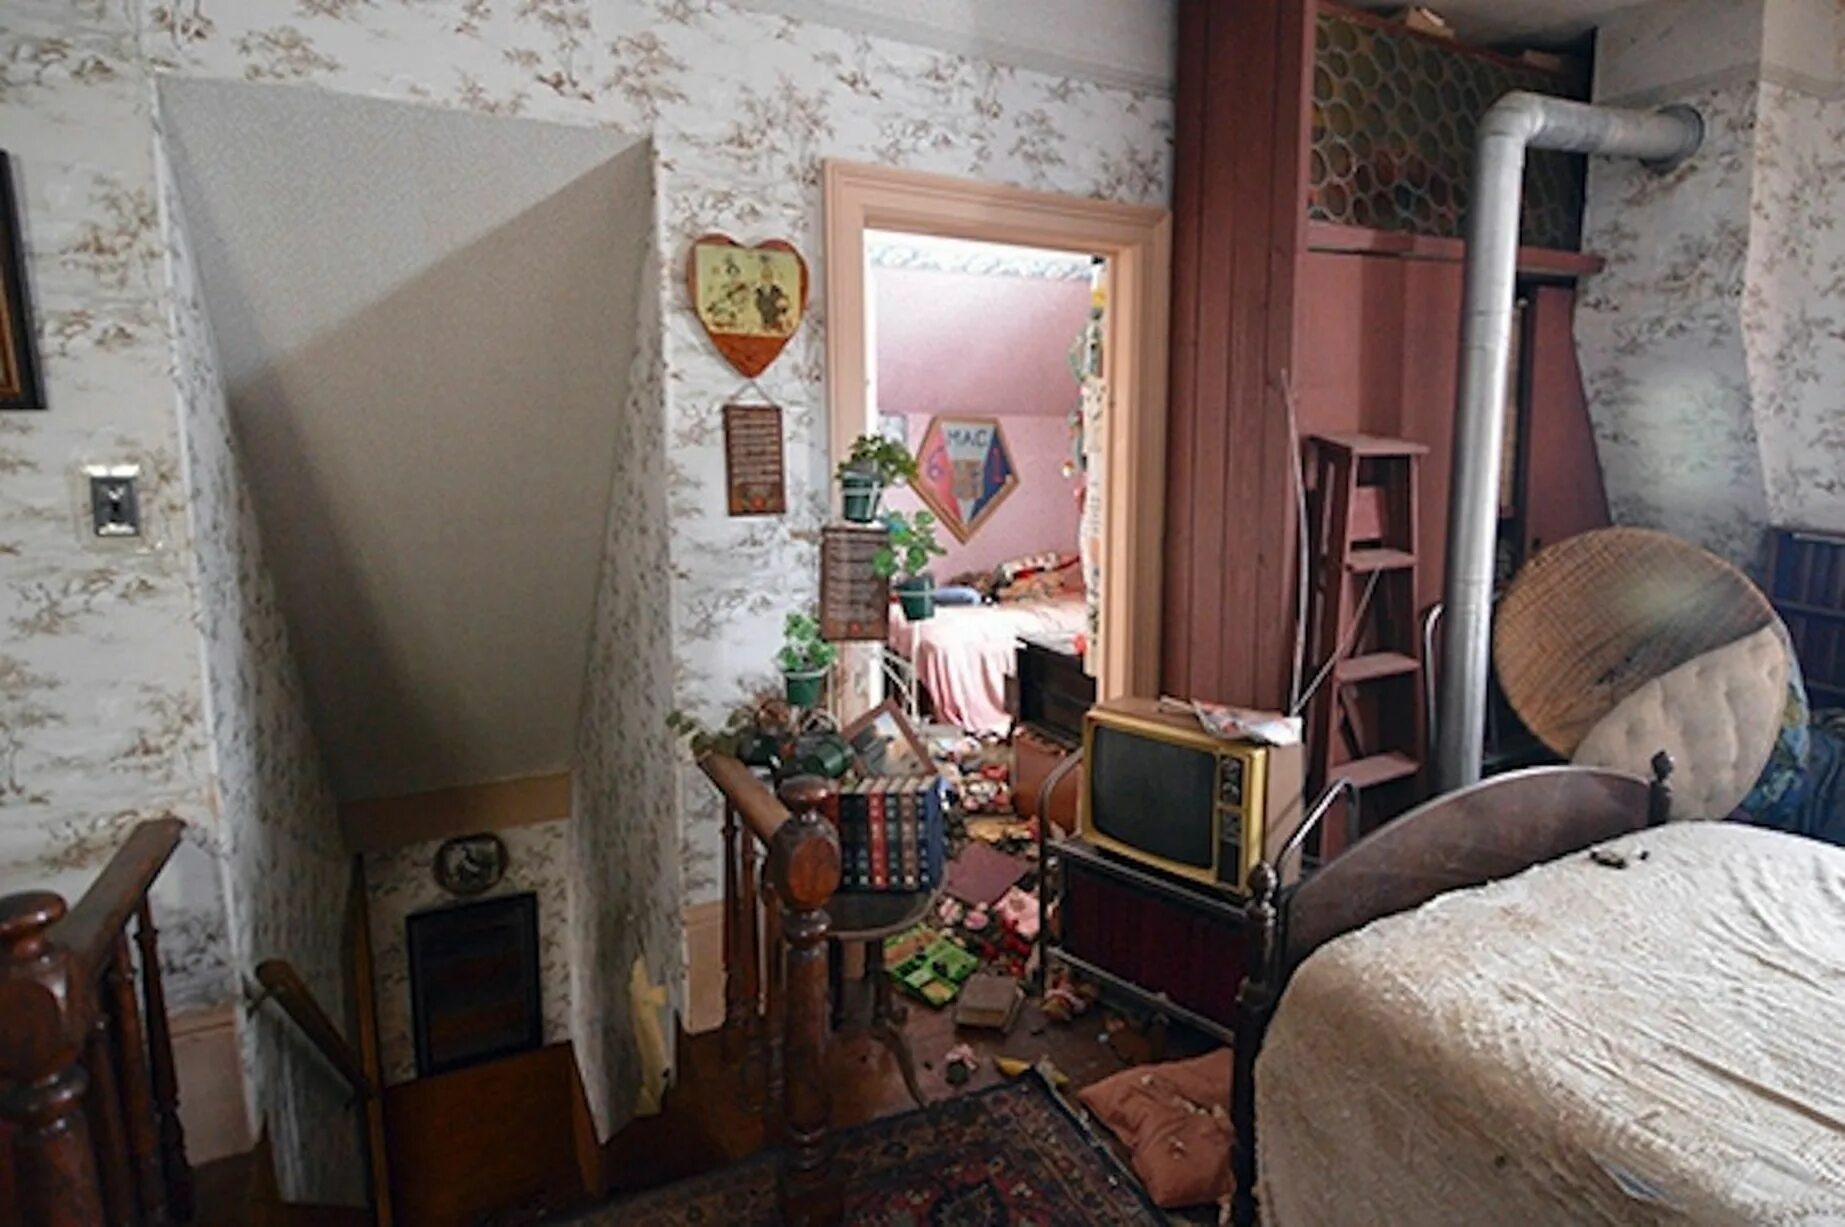 Квартира в которой никто не живет. Дом в котором никто не проживал. Фото квартиры в которой никто не живёт. Квартира в Париже. Пустовавшая десятки лет фото.